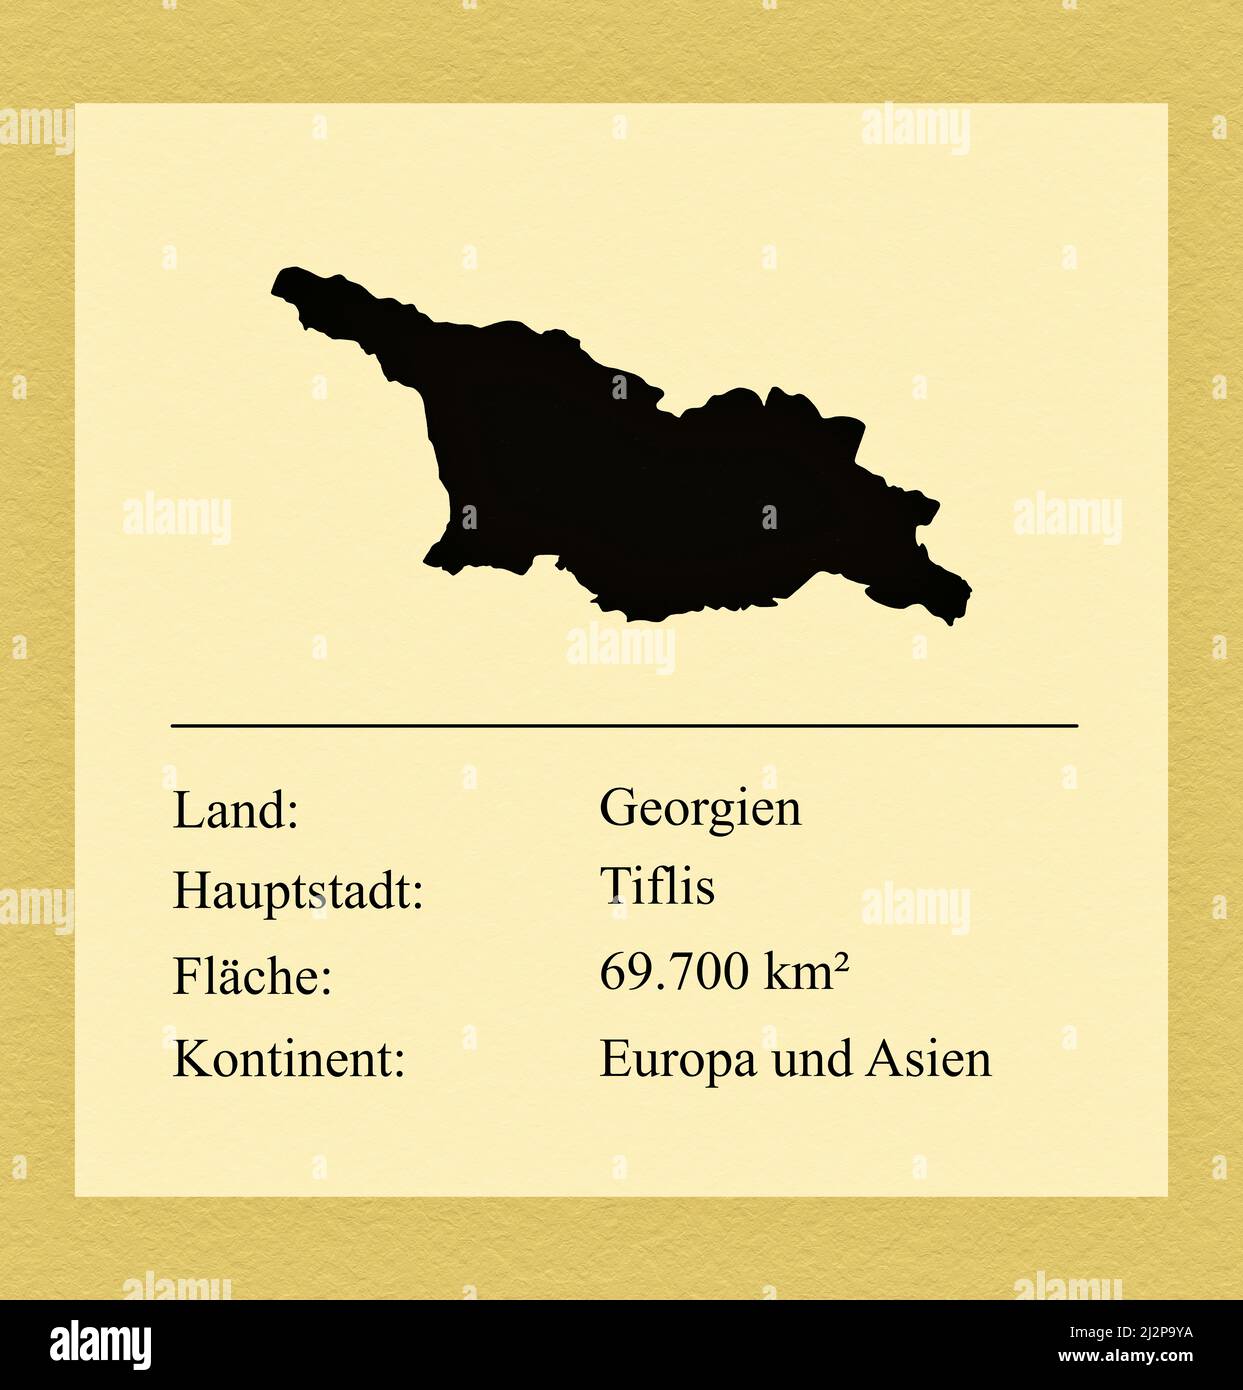 Umrisse des Landes Georgien, darunter ein kleiner Steckbrief mit Ländernamen, Hauptstadt, Fläche und Kontinent Stock Photo